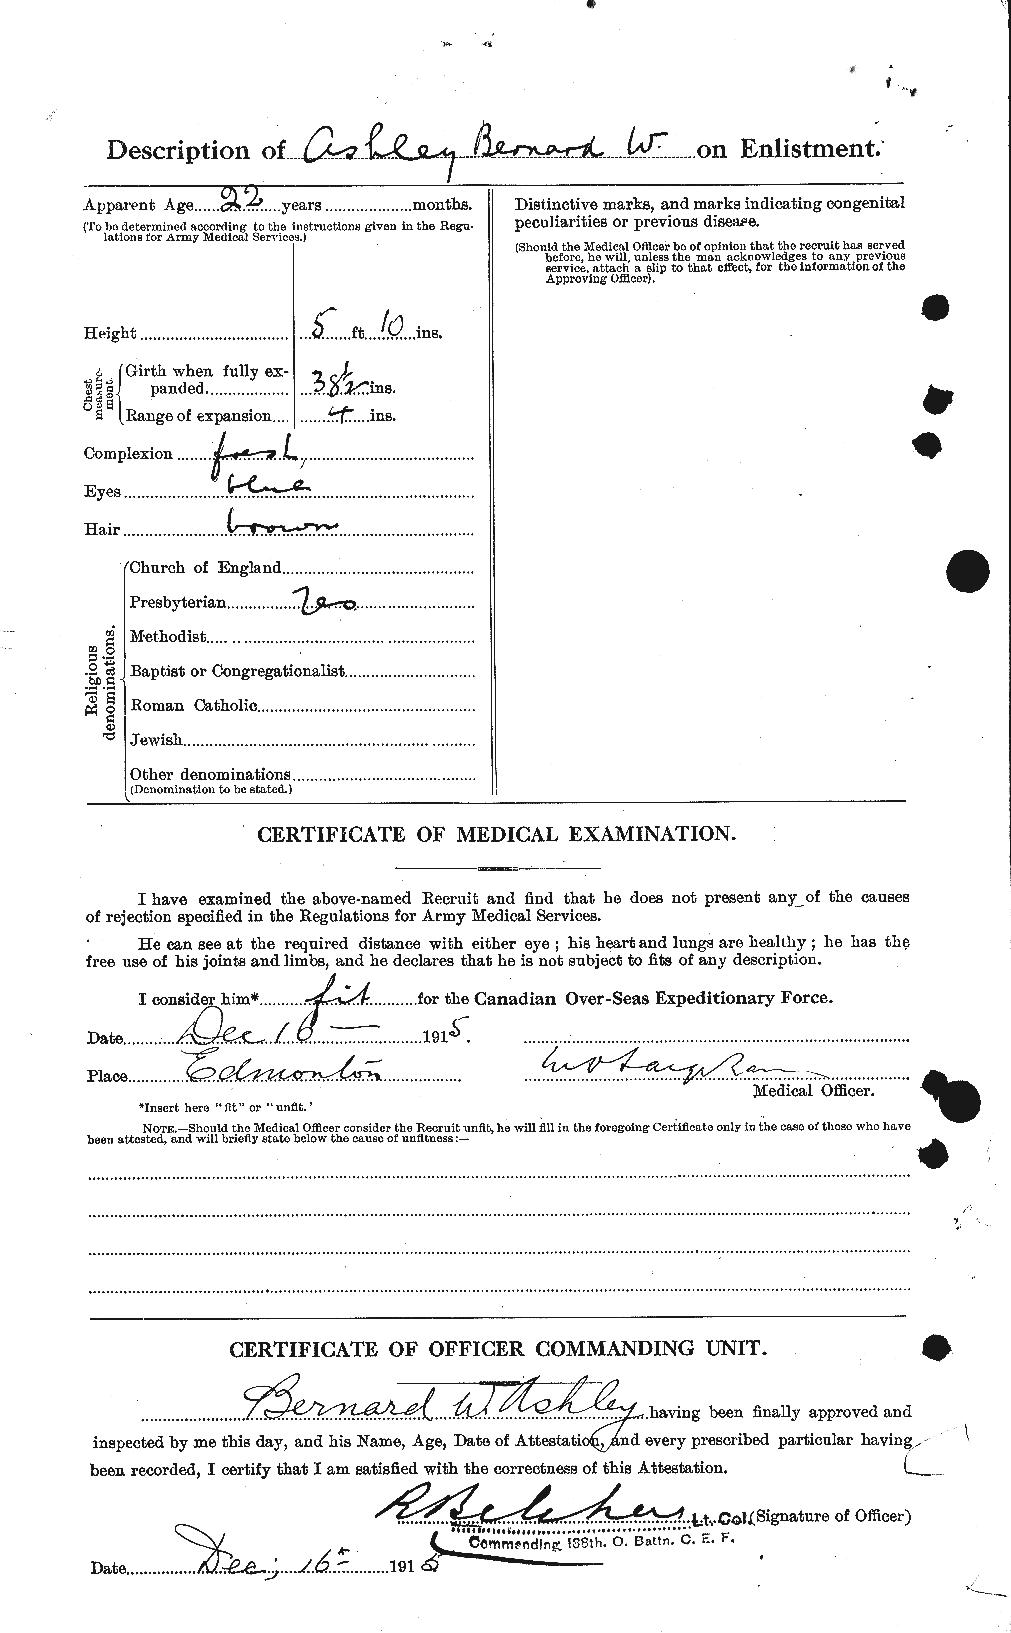 Dossiers du Personnel de la Première Guerre mondiale - CEC 223219b